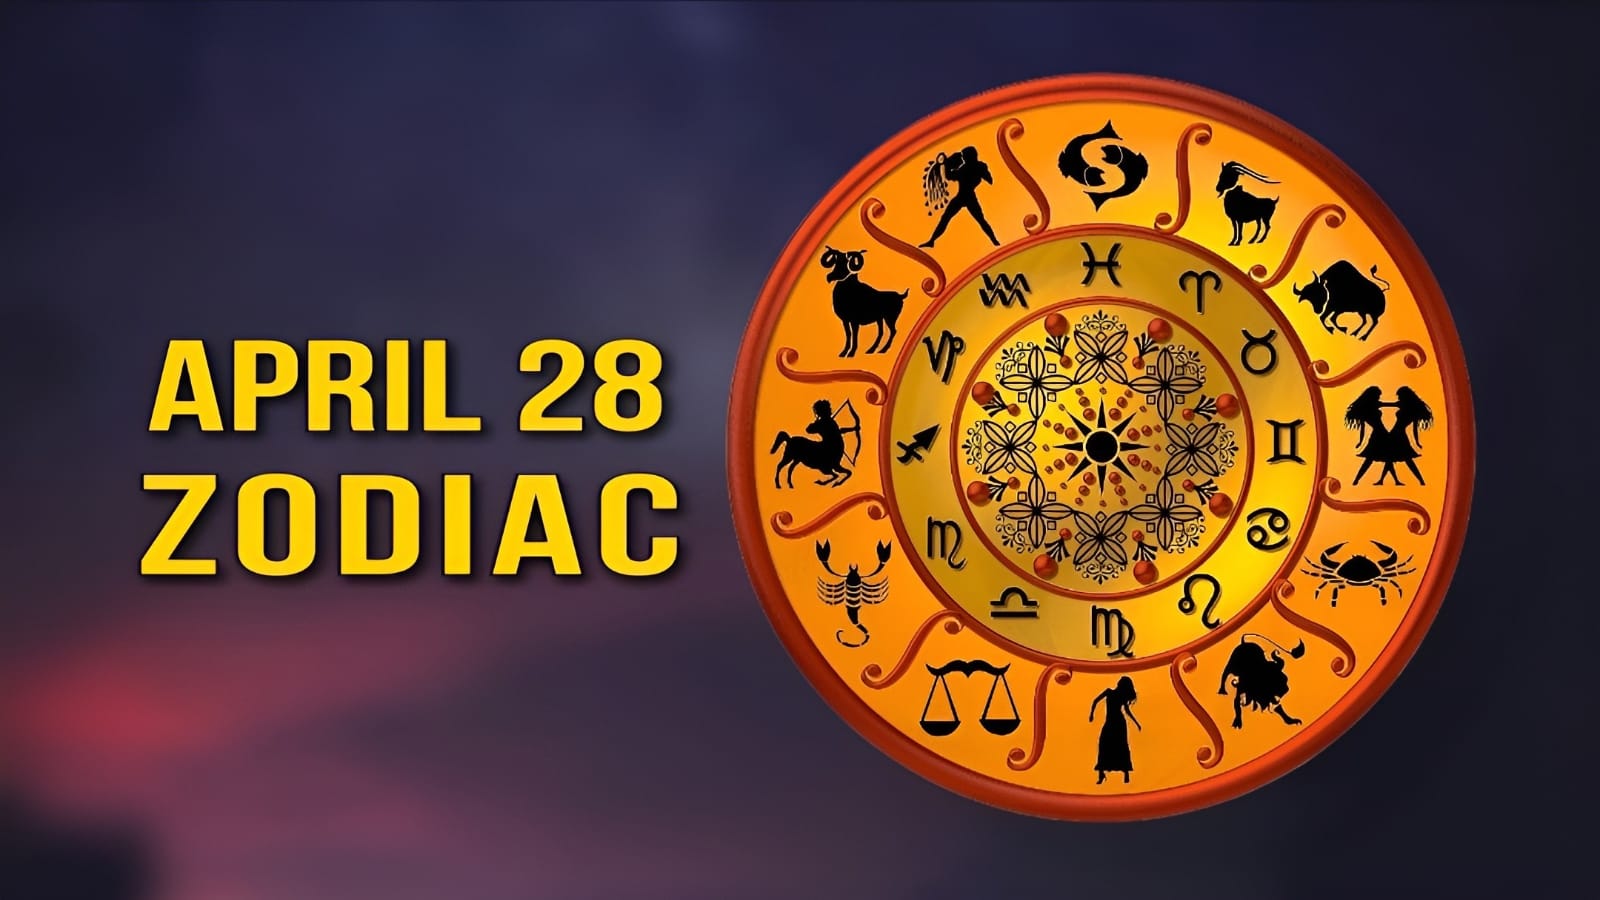 April 28 Zodiac